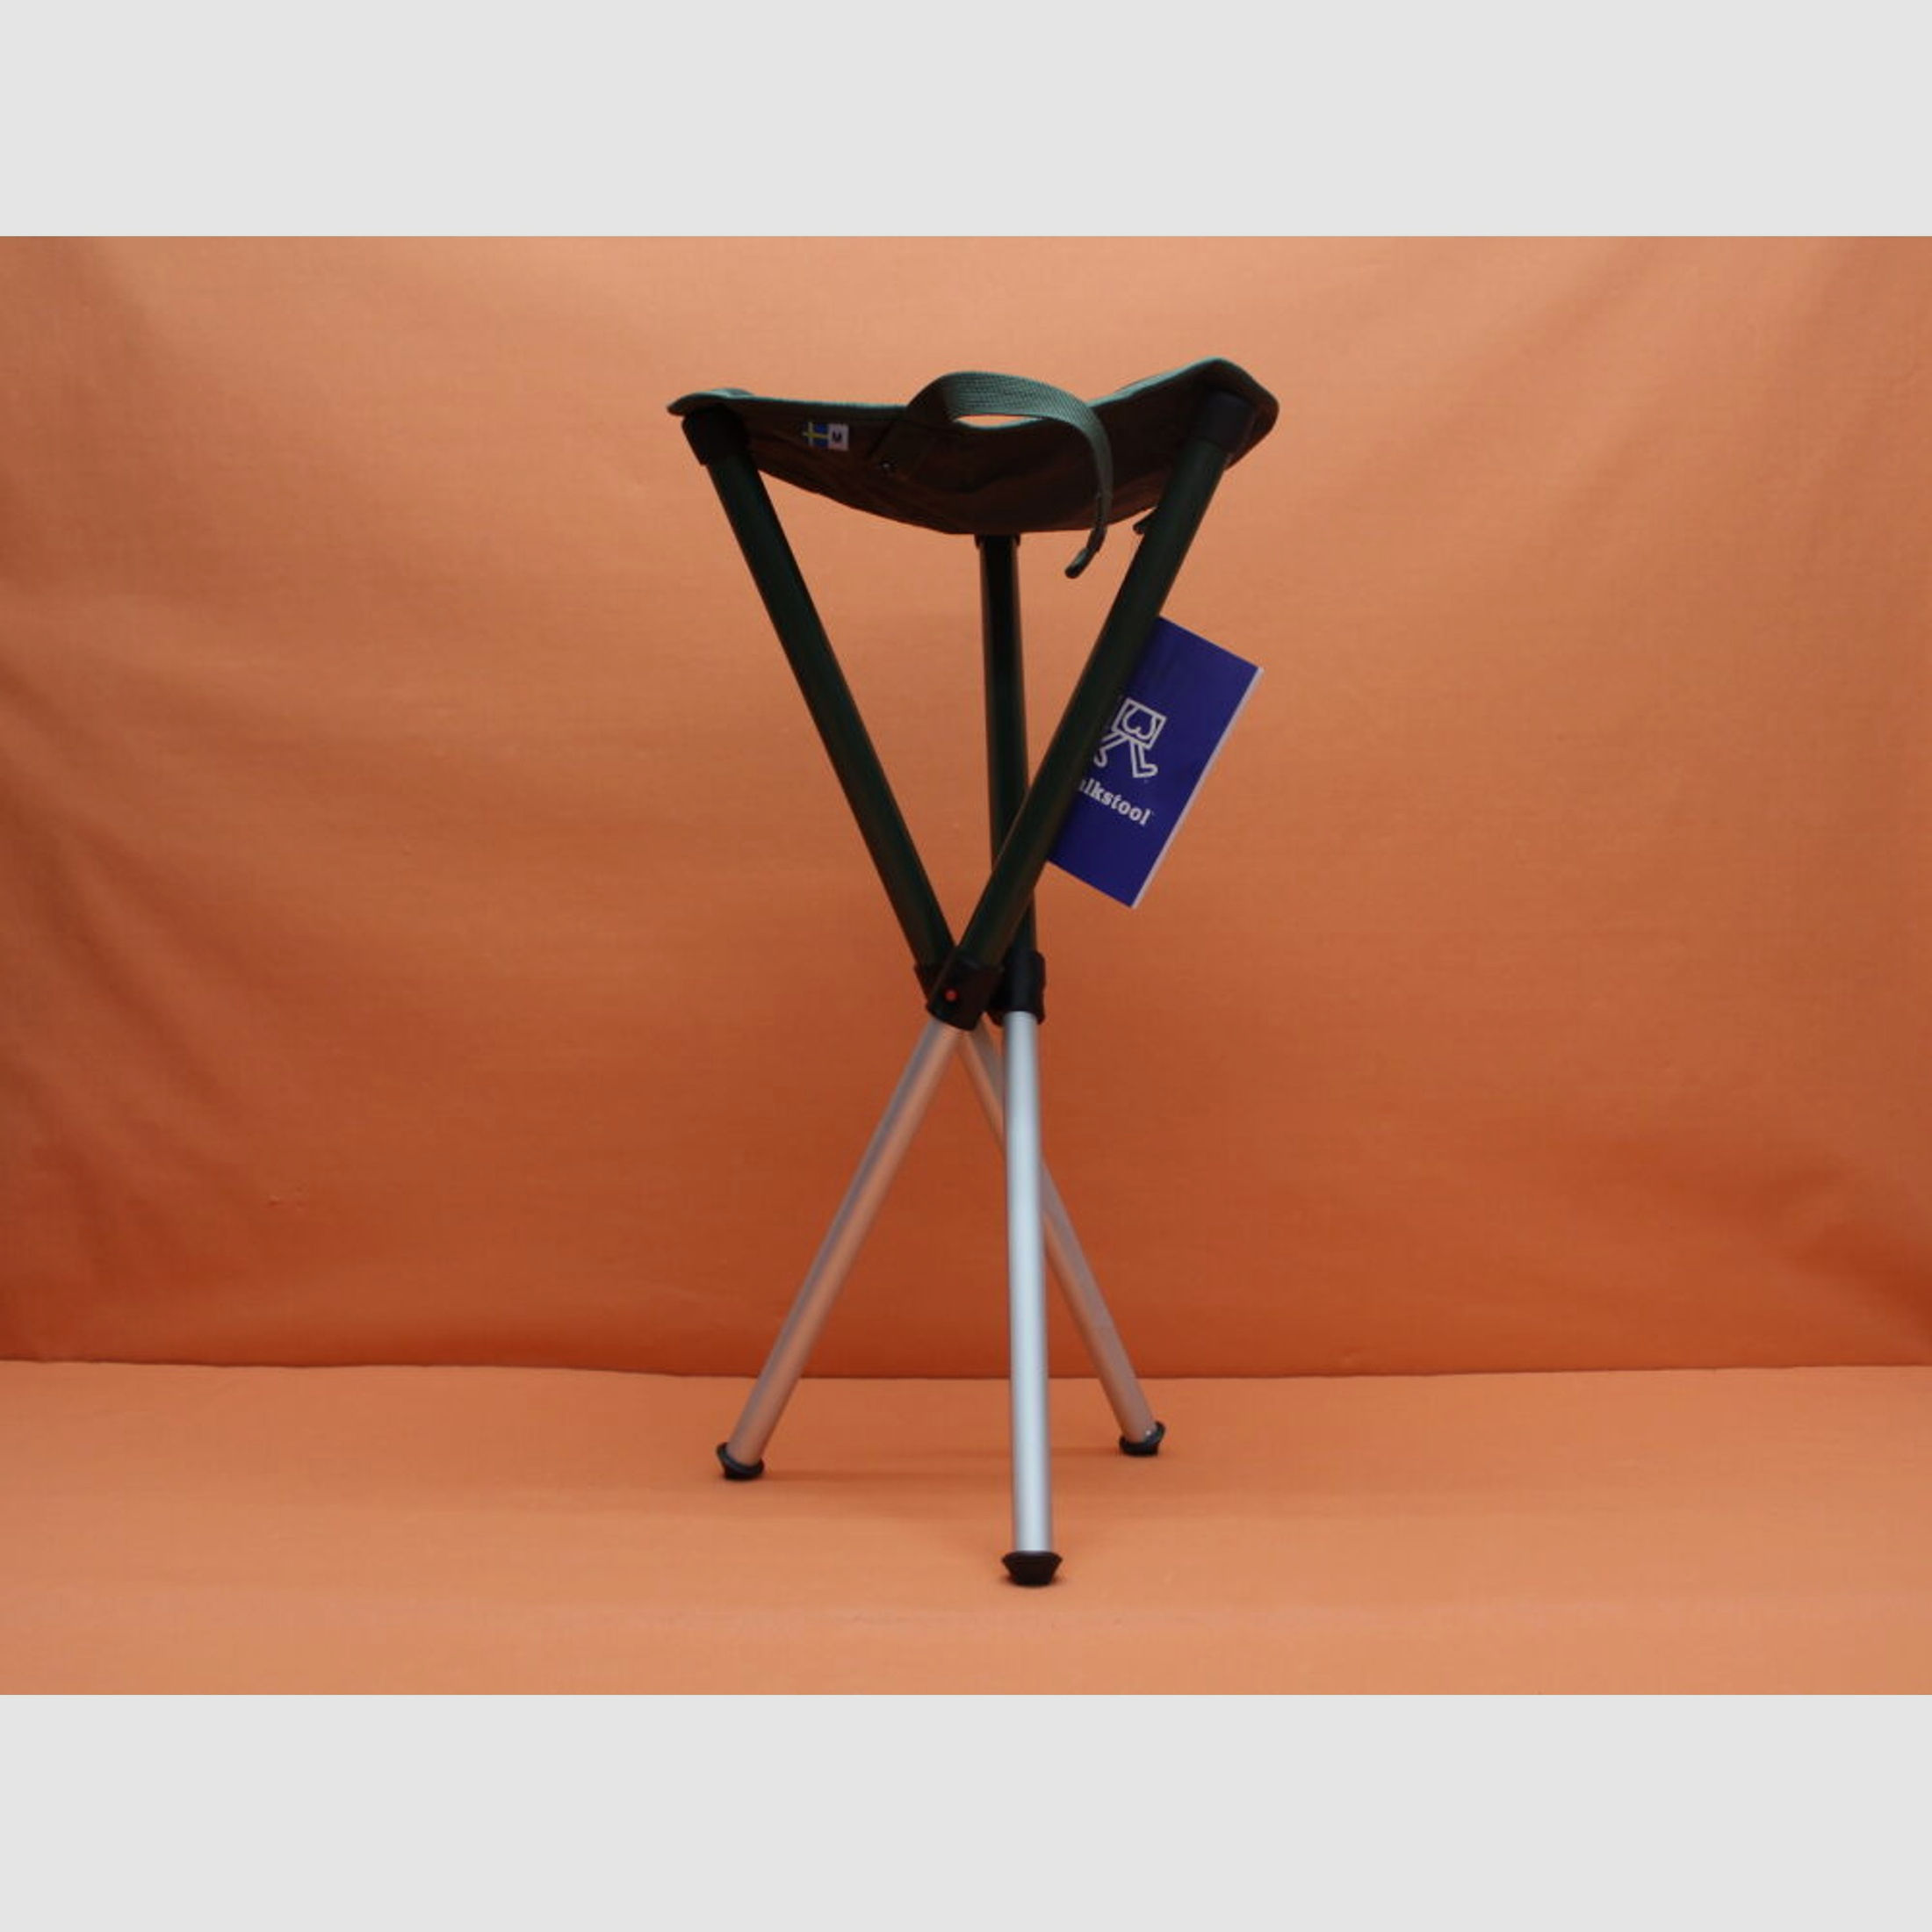 Walkstool	 Walkstool Basic: Dreibein-Sitzstuhl 60cm mit Teleskopbeinen zum platzsparenden transportieren